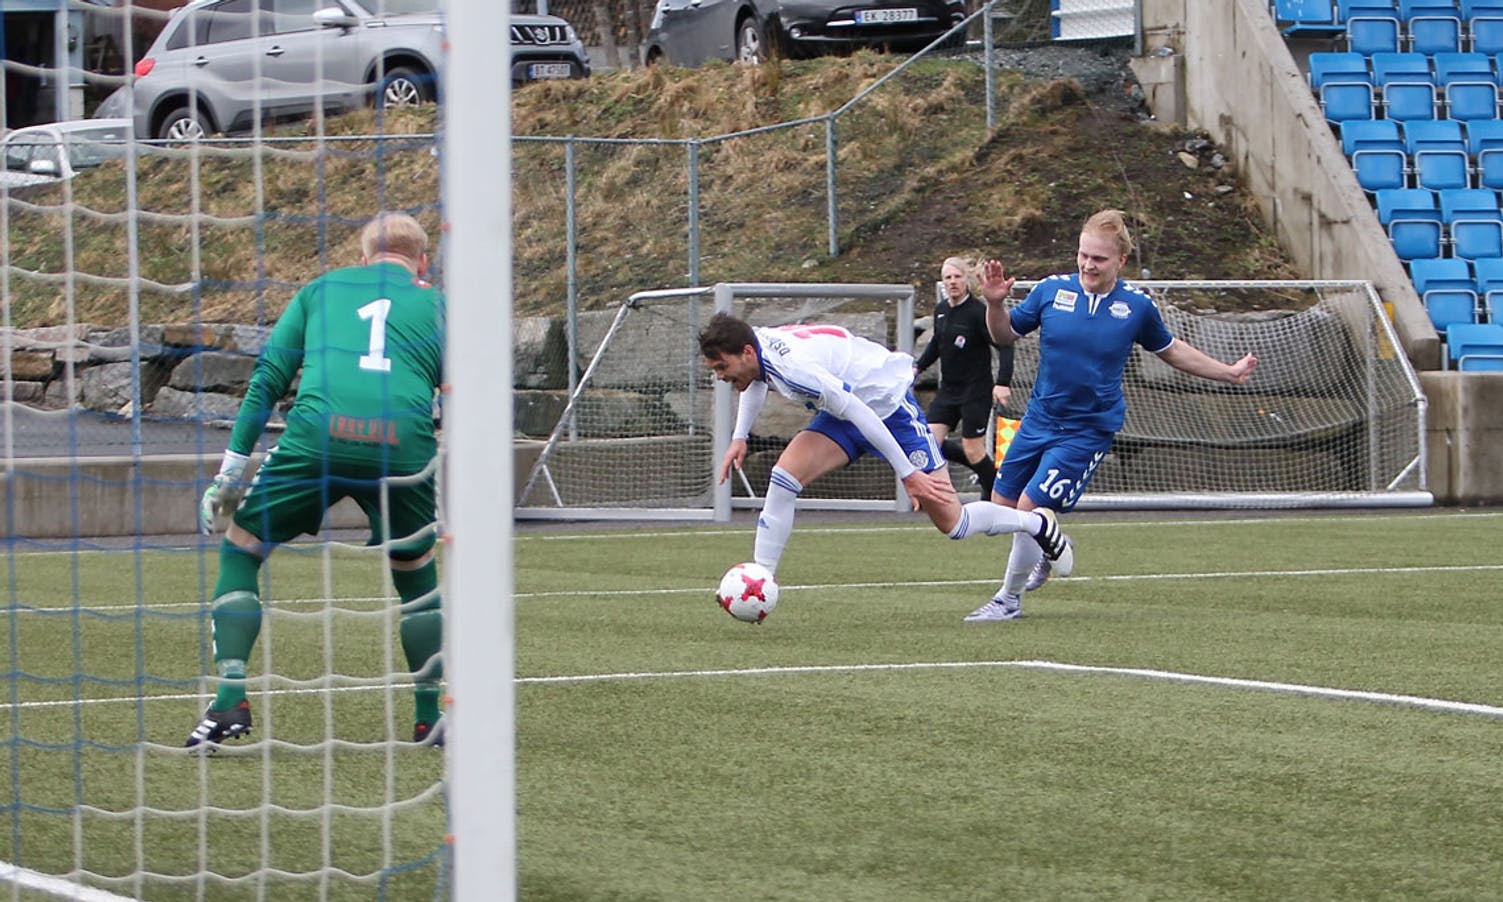 Lysekloster slo Gneist 7-0 i dagens treningskamp. (Foto: CFB)